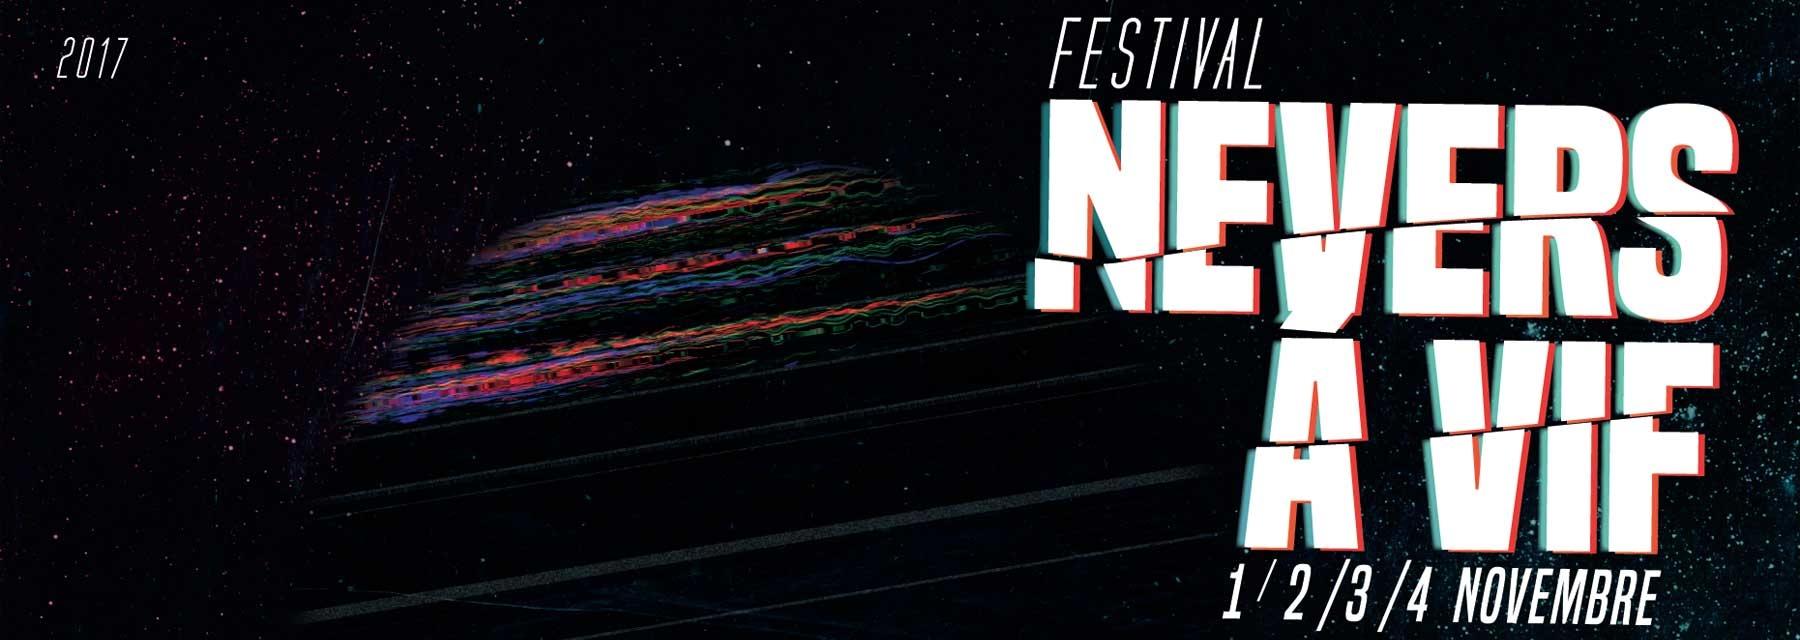 Bac FM radio officielle de la 31ème édition du festival Nevers à vif